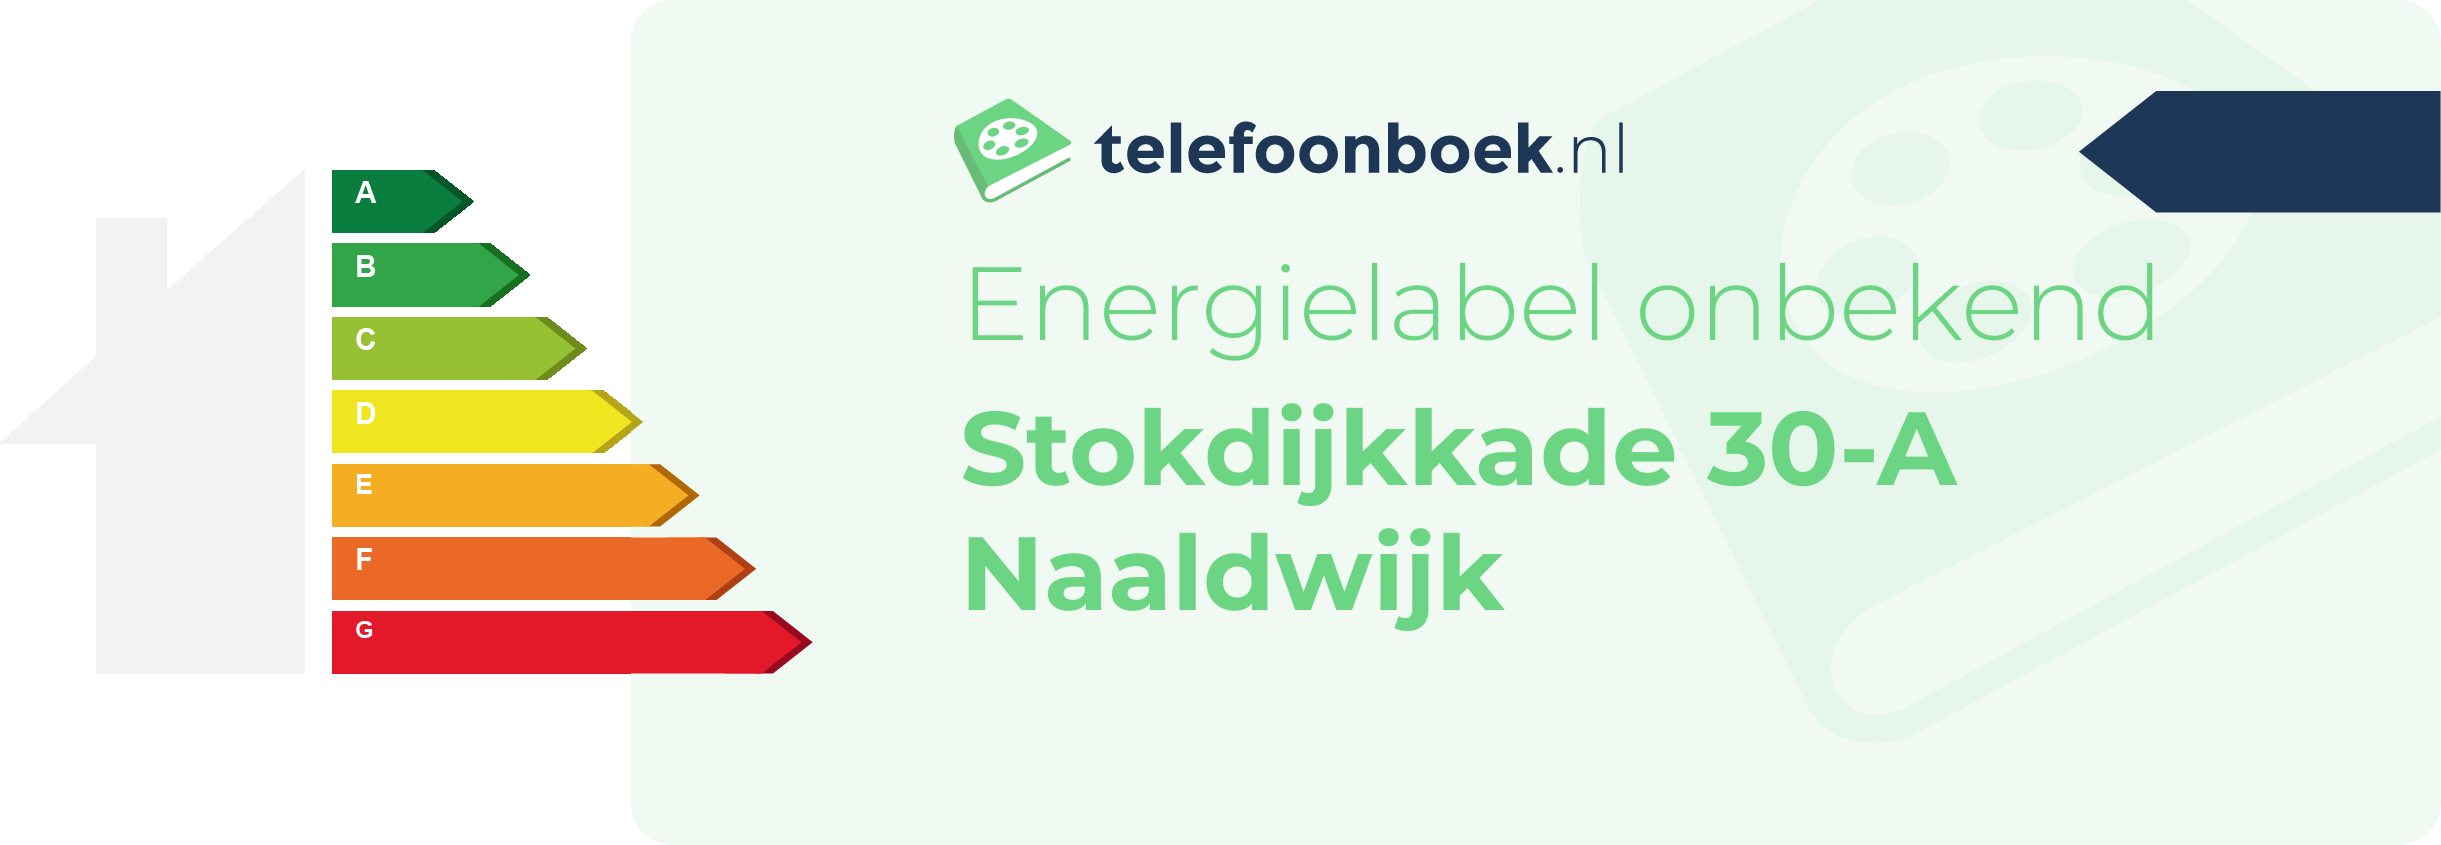 Energielabel Stokdijkkade 30-A Naaldwijk